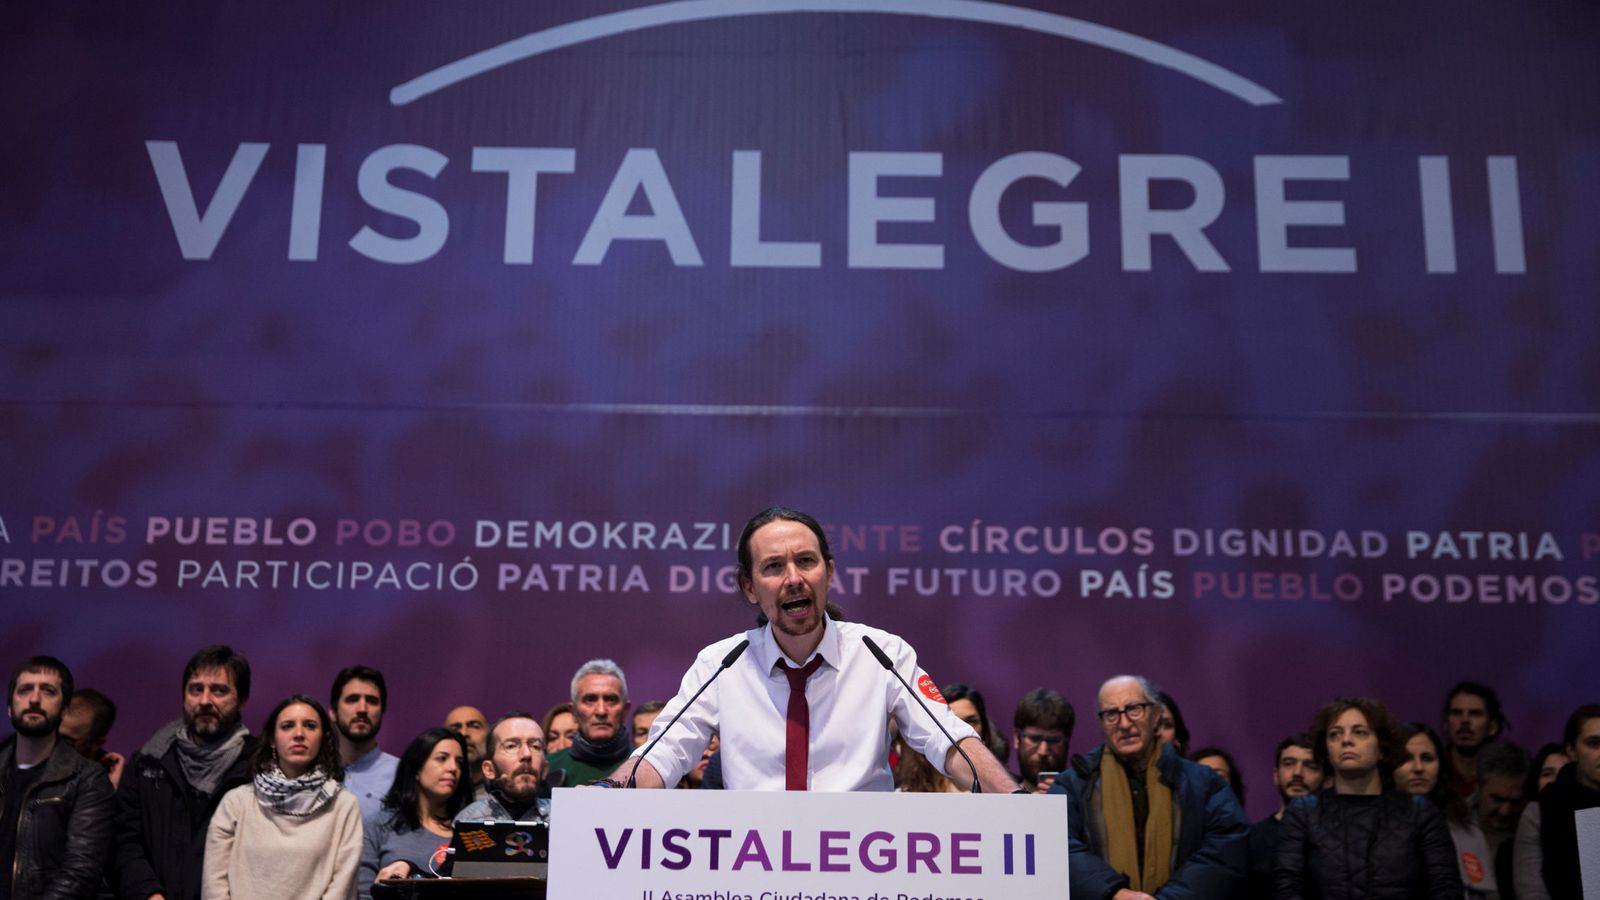 Foto: El líder de Podemos, Pablo Iglesias, cierra la asamblea de Vistalegre II acompañado por su equipo. (Reuters)